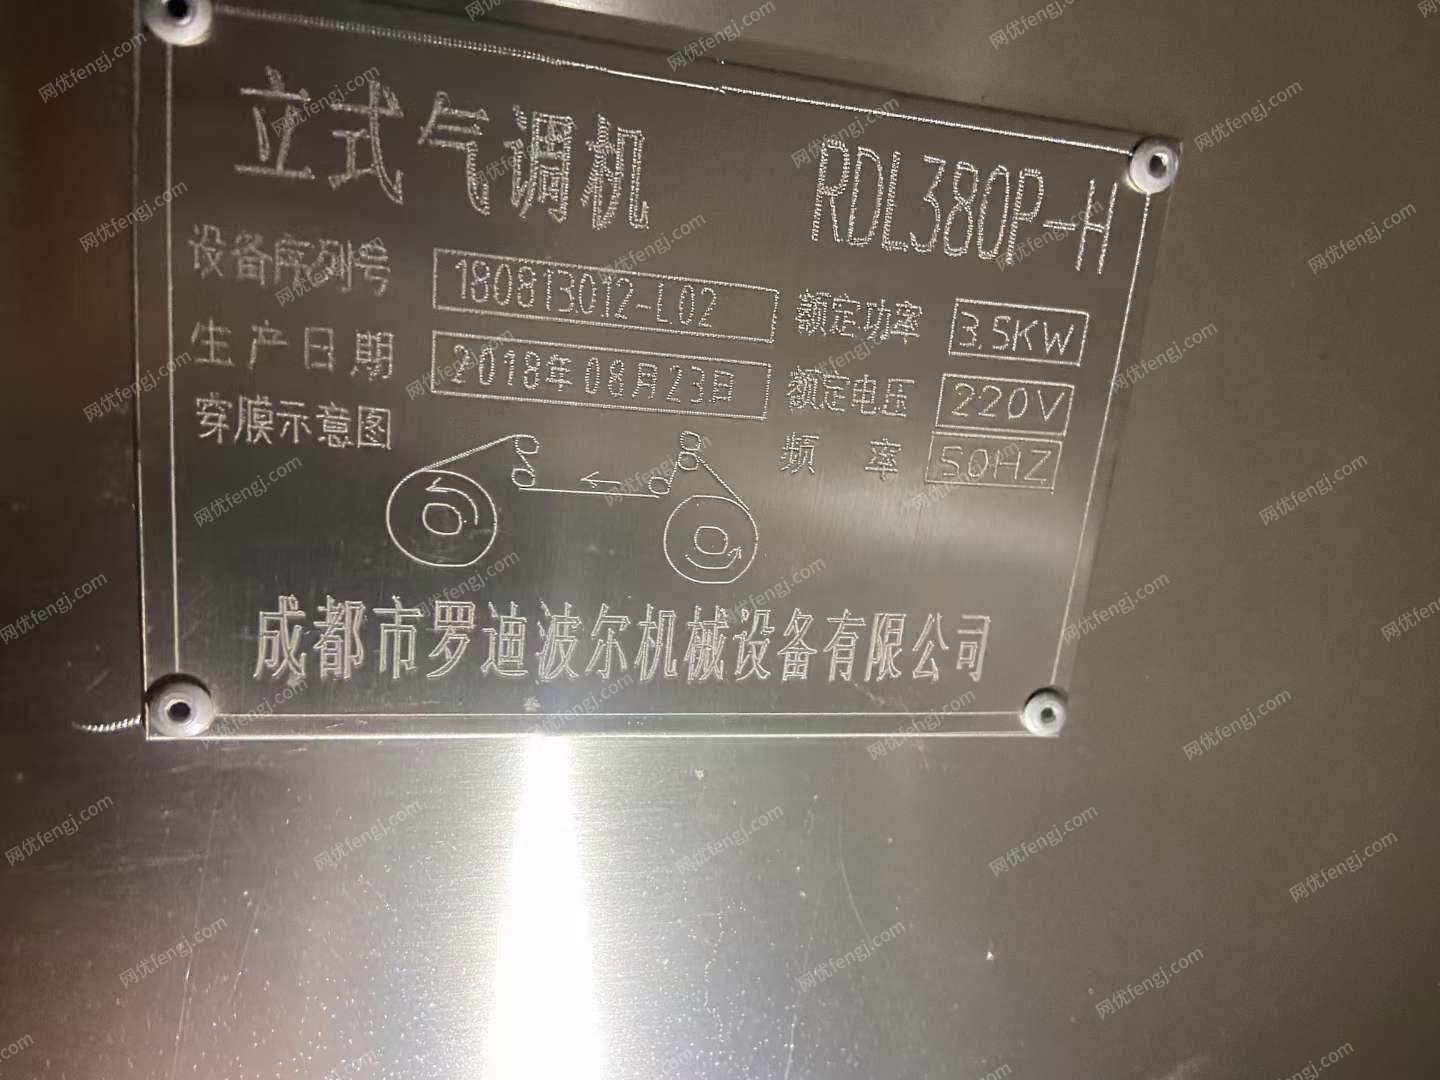 安徽滁州整厂回收商处置立式气调保鲜包装机1台